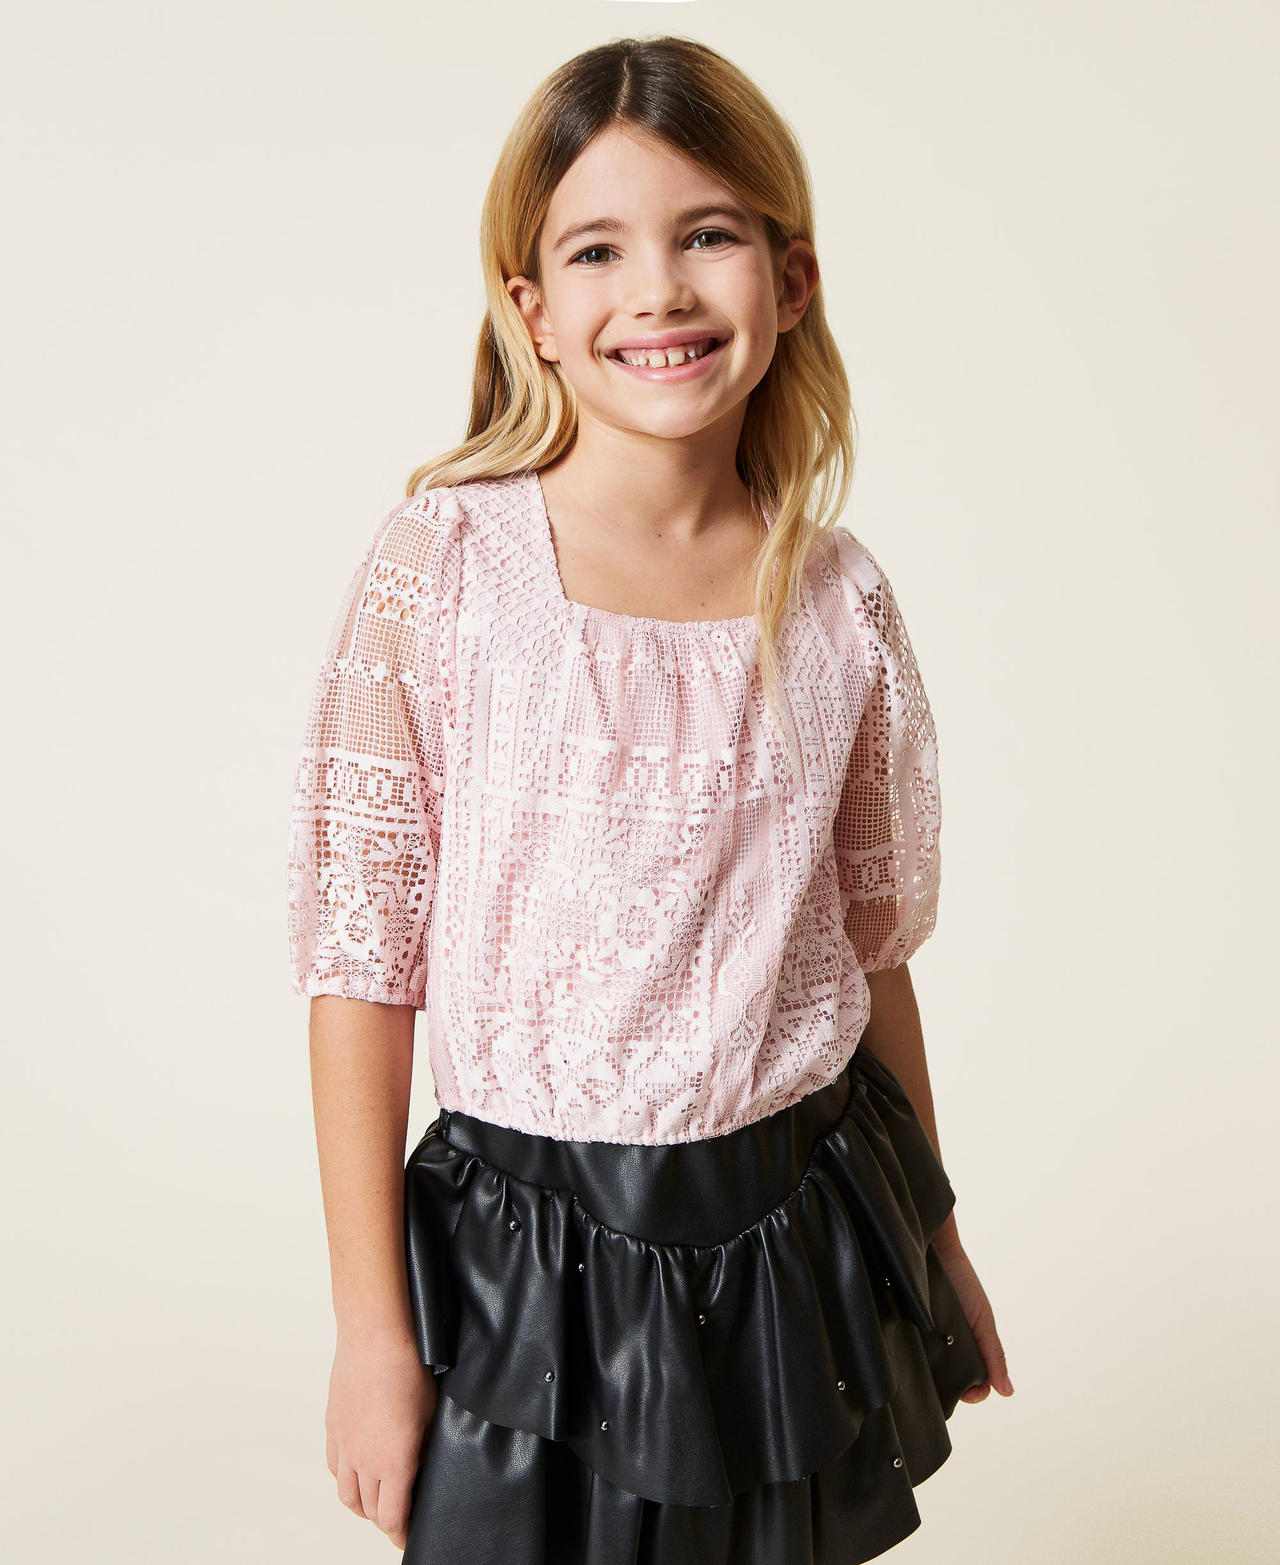 Кружевная блузка Розовый Мел Девочка 221GJ2Q66-03